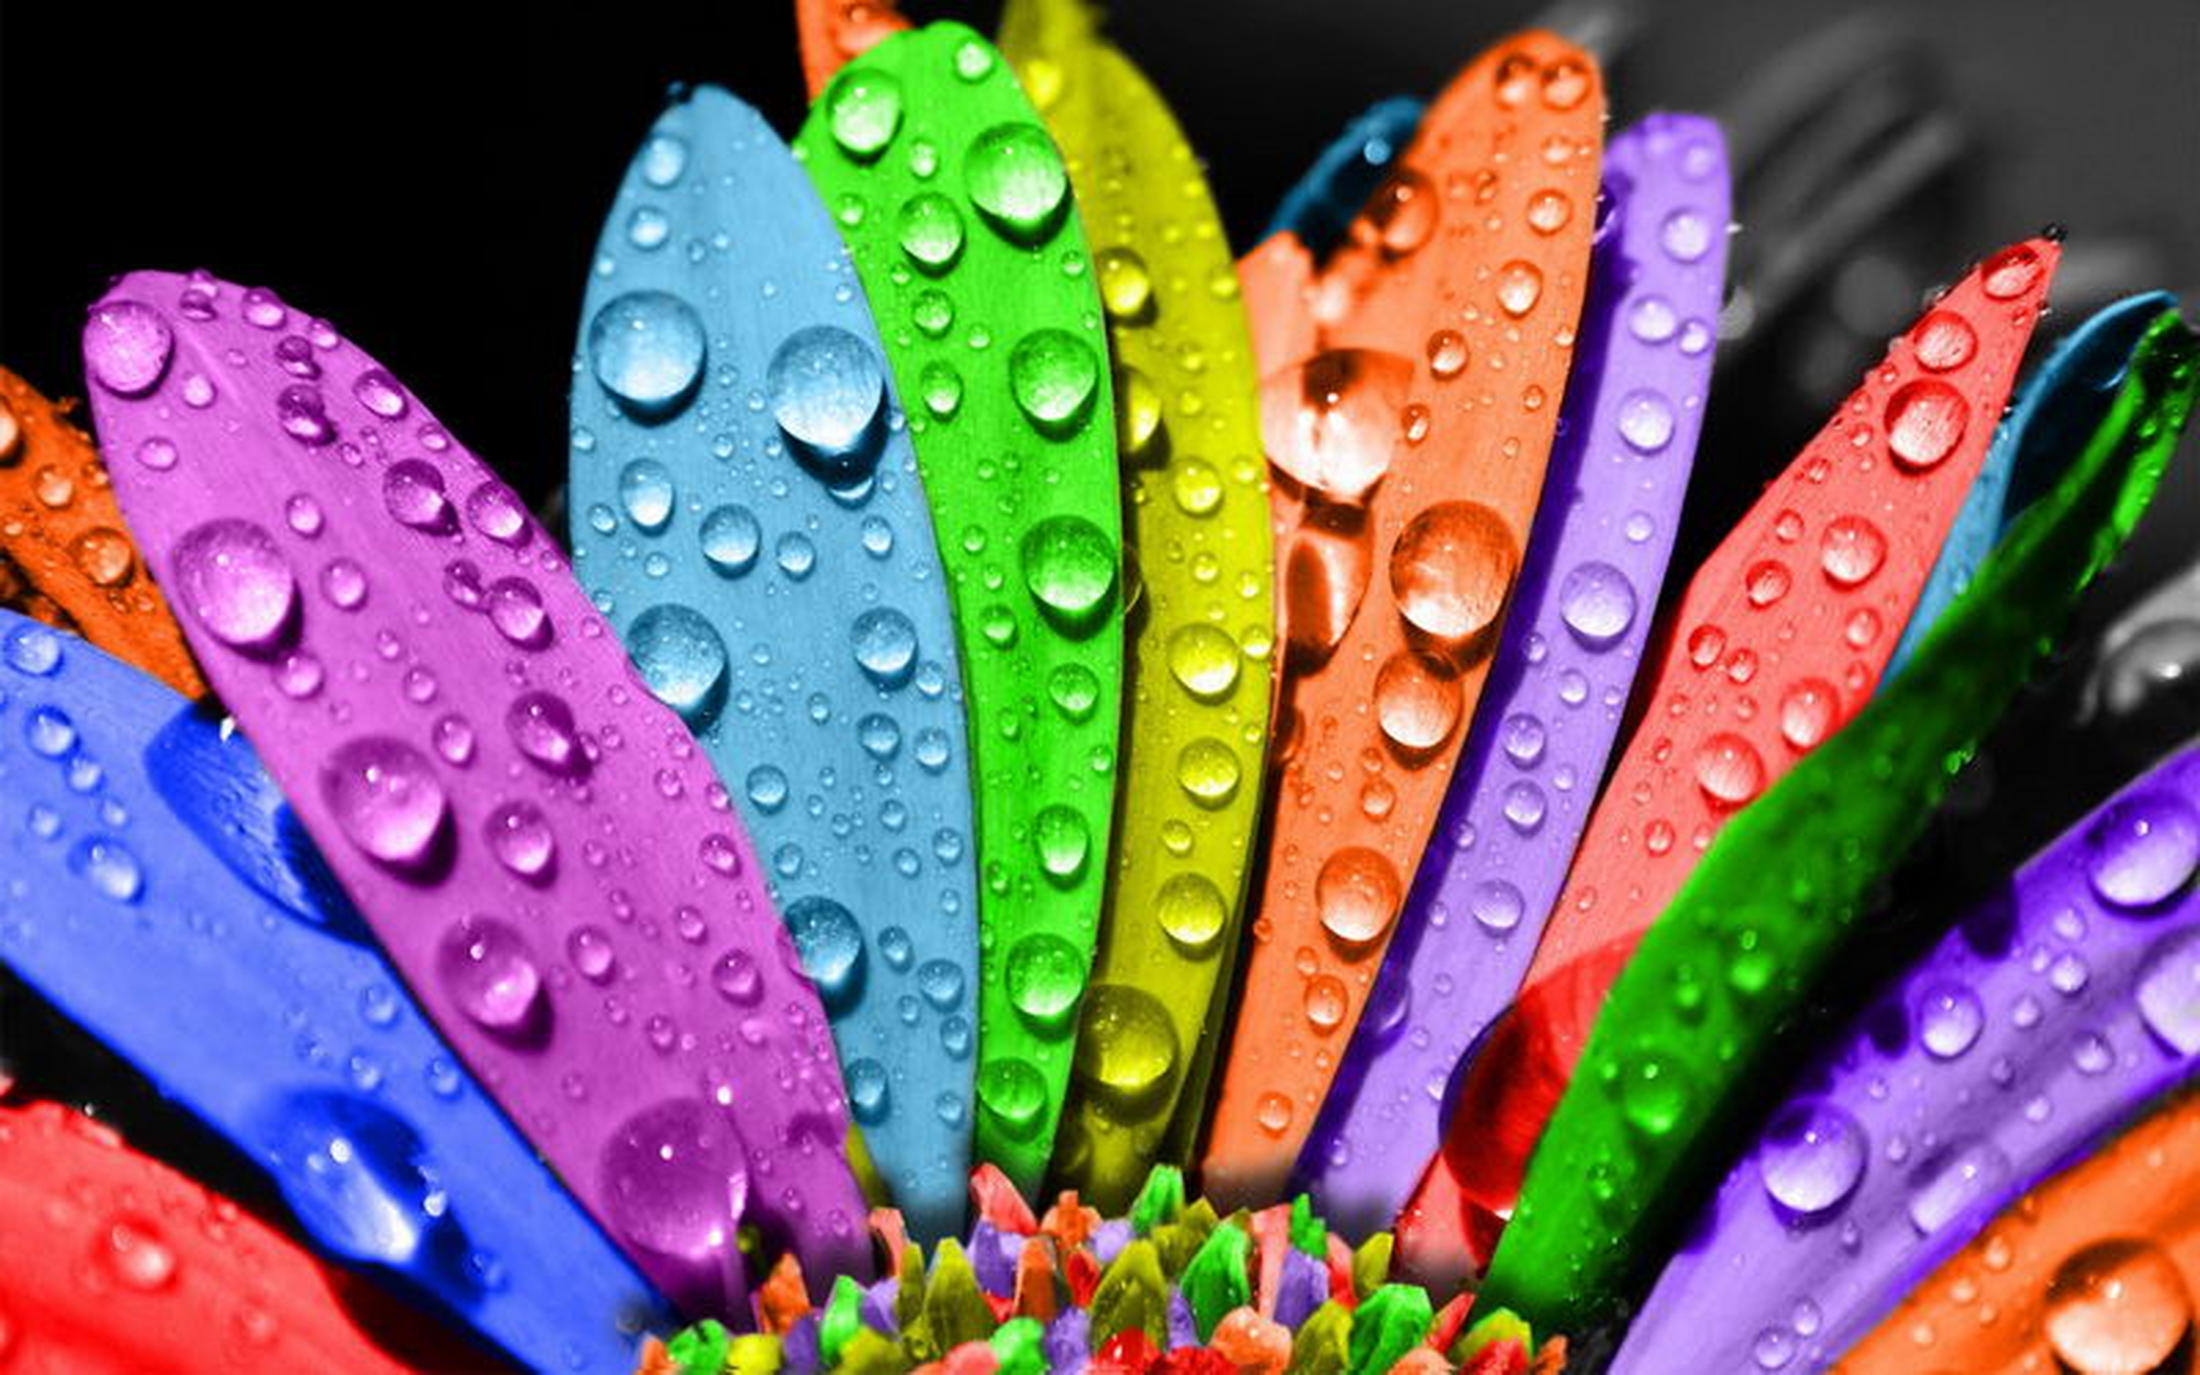  colorful rainbow paint, texture paints, background, download photo, color rainbow paint texture background